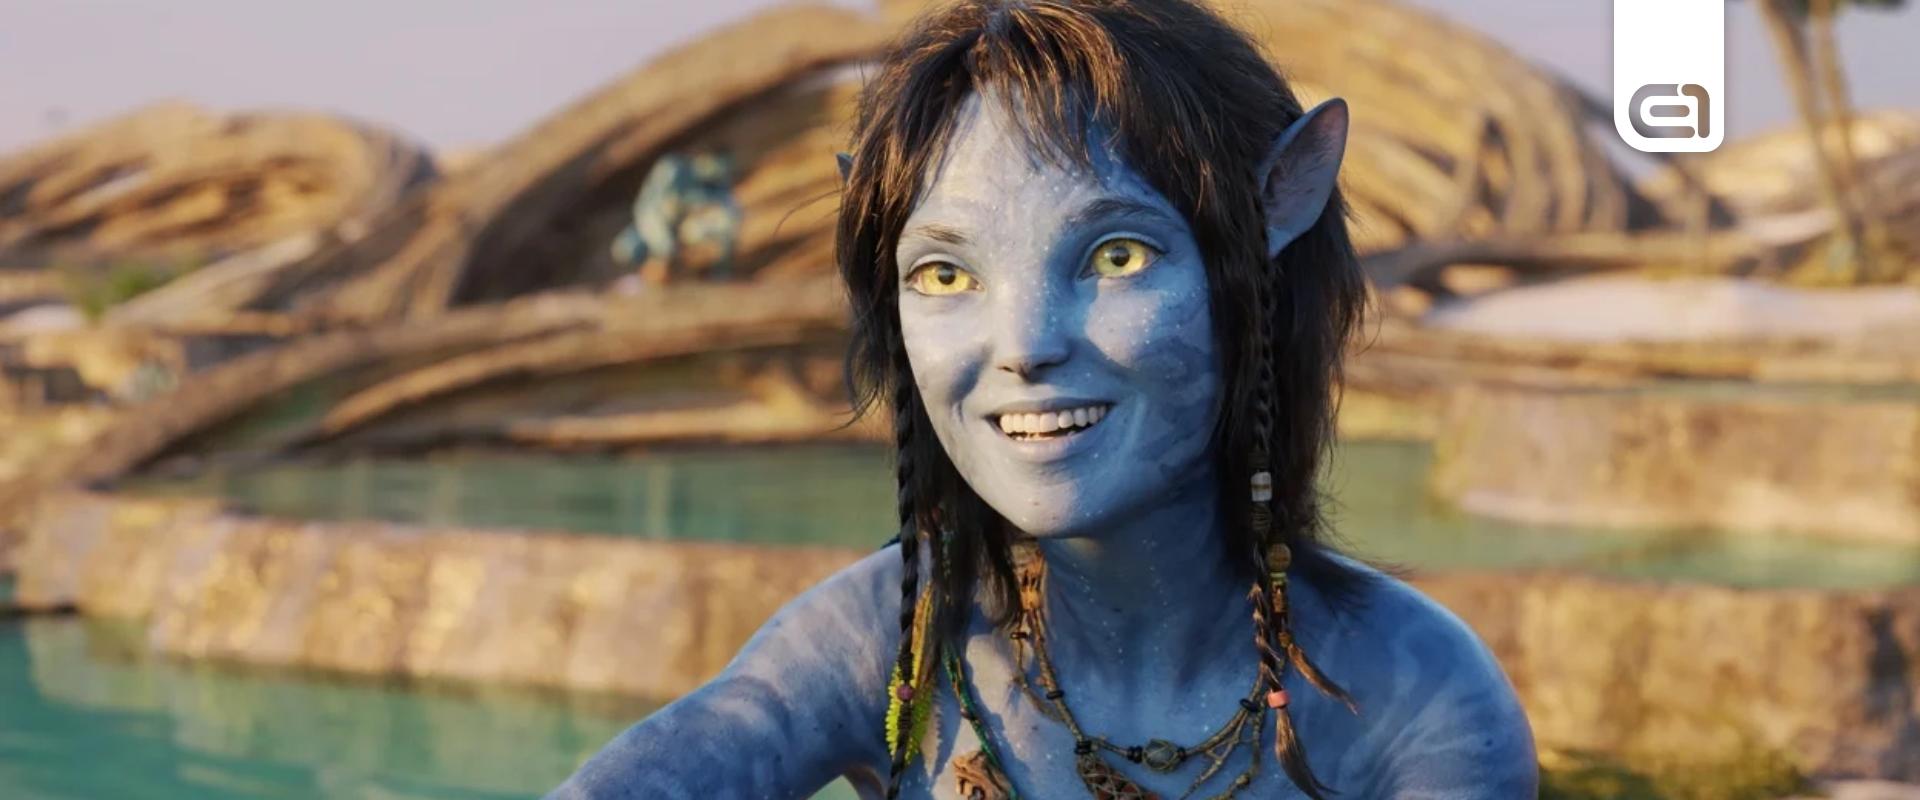 Öt hét alatt lett a legsikeresebb film az Avatar: A víz útja Magyarországon